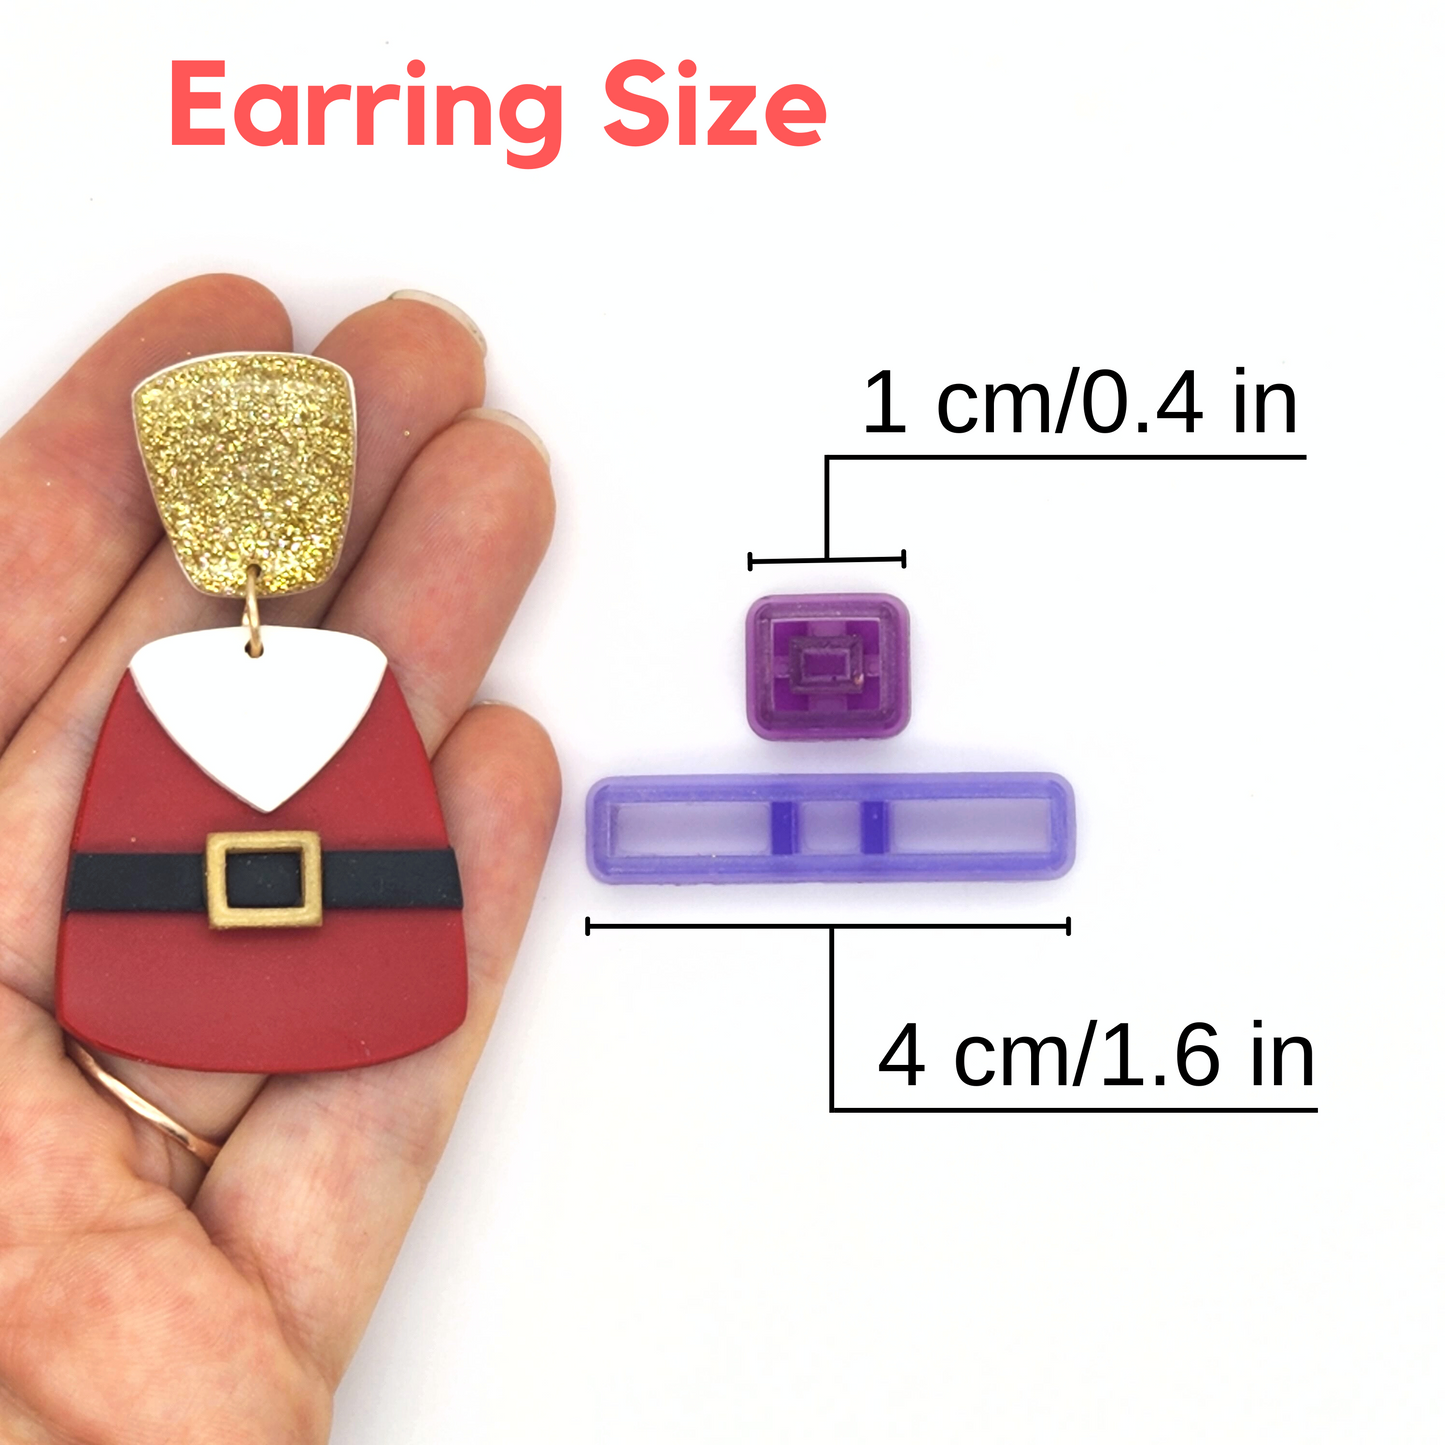 Earring Size for Santa Belt Cutter